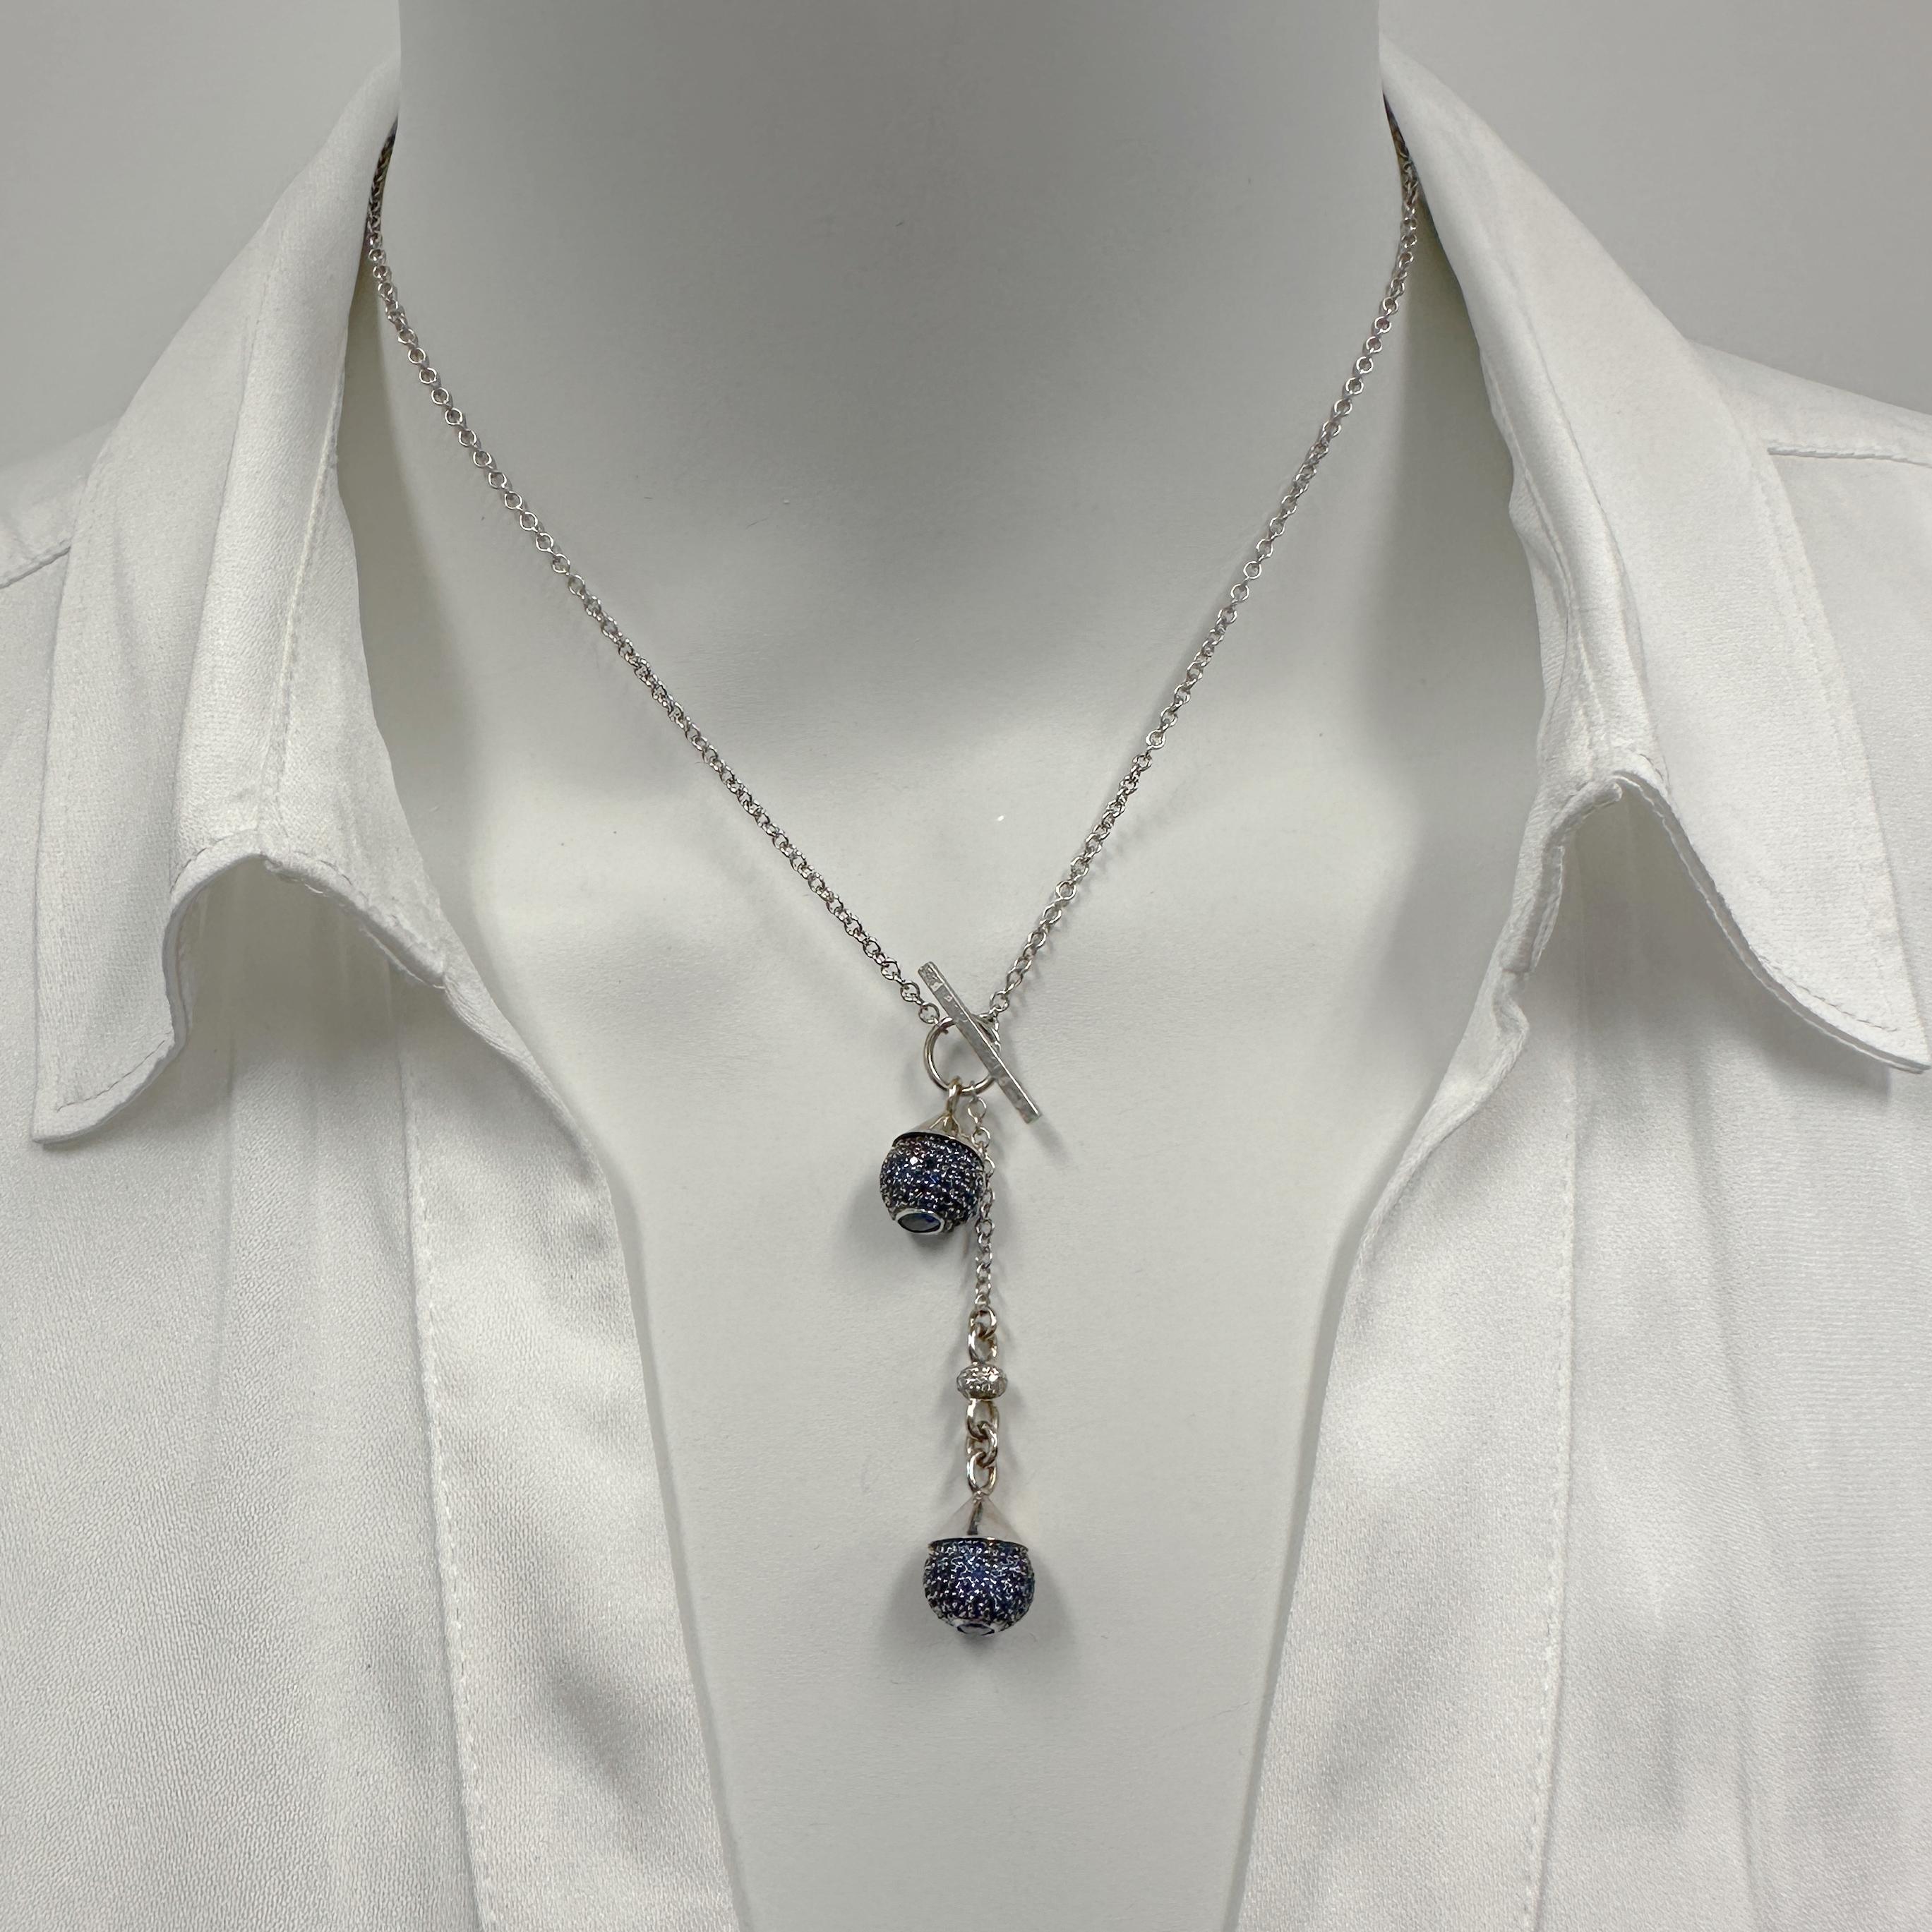 Eytan Brandes hat einen eleganten Saphir-Manschettenknopf zerlegt (siehe letztes Foto in der Reihe), um diese unglaubliche, einzigartige* Halskette mit Knebelverschluss herzustellen.  

Die Saphirkugeln sind eine unglaubliche Leistung der